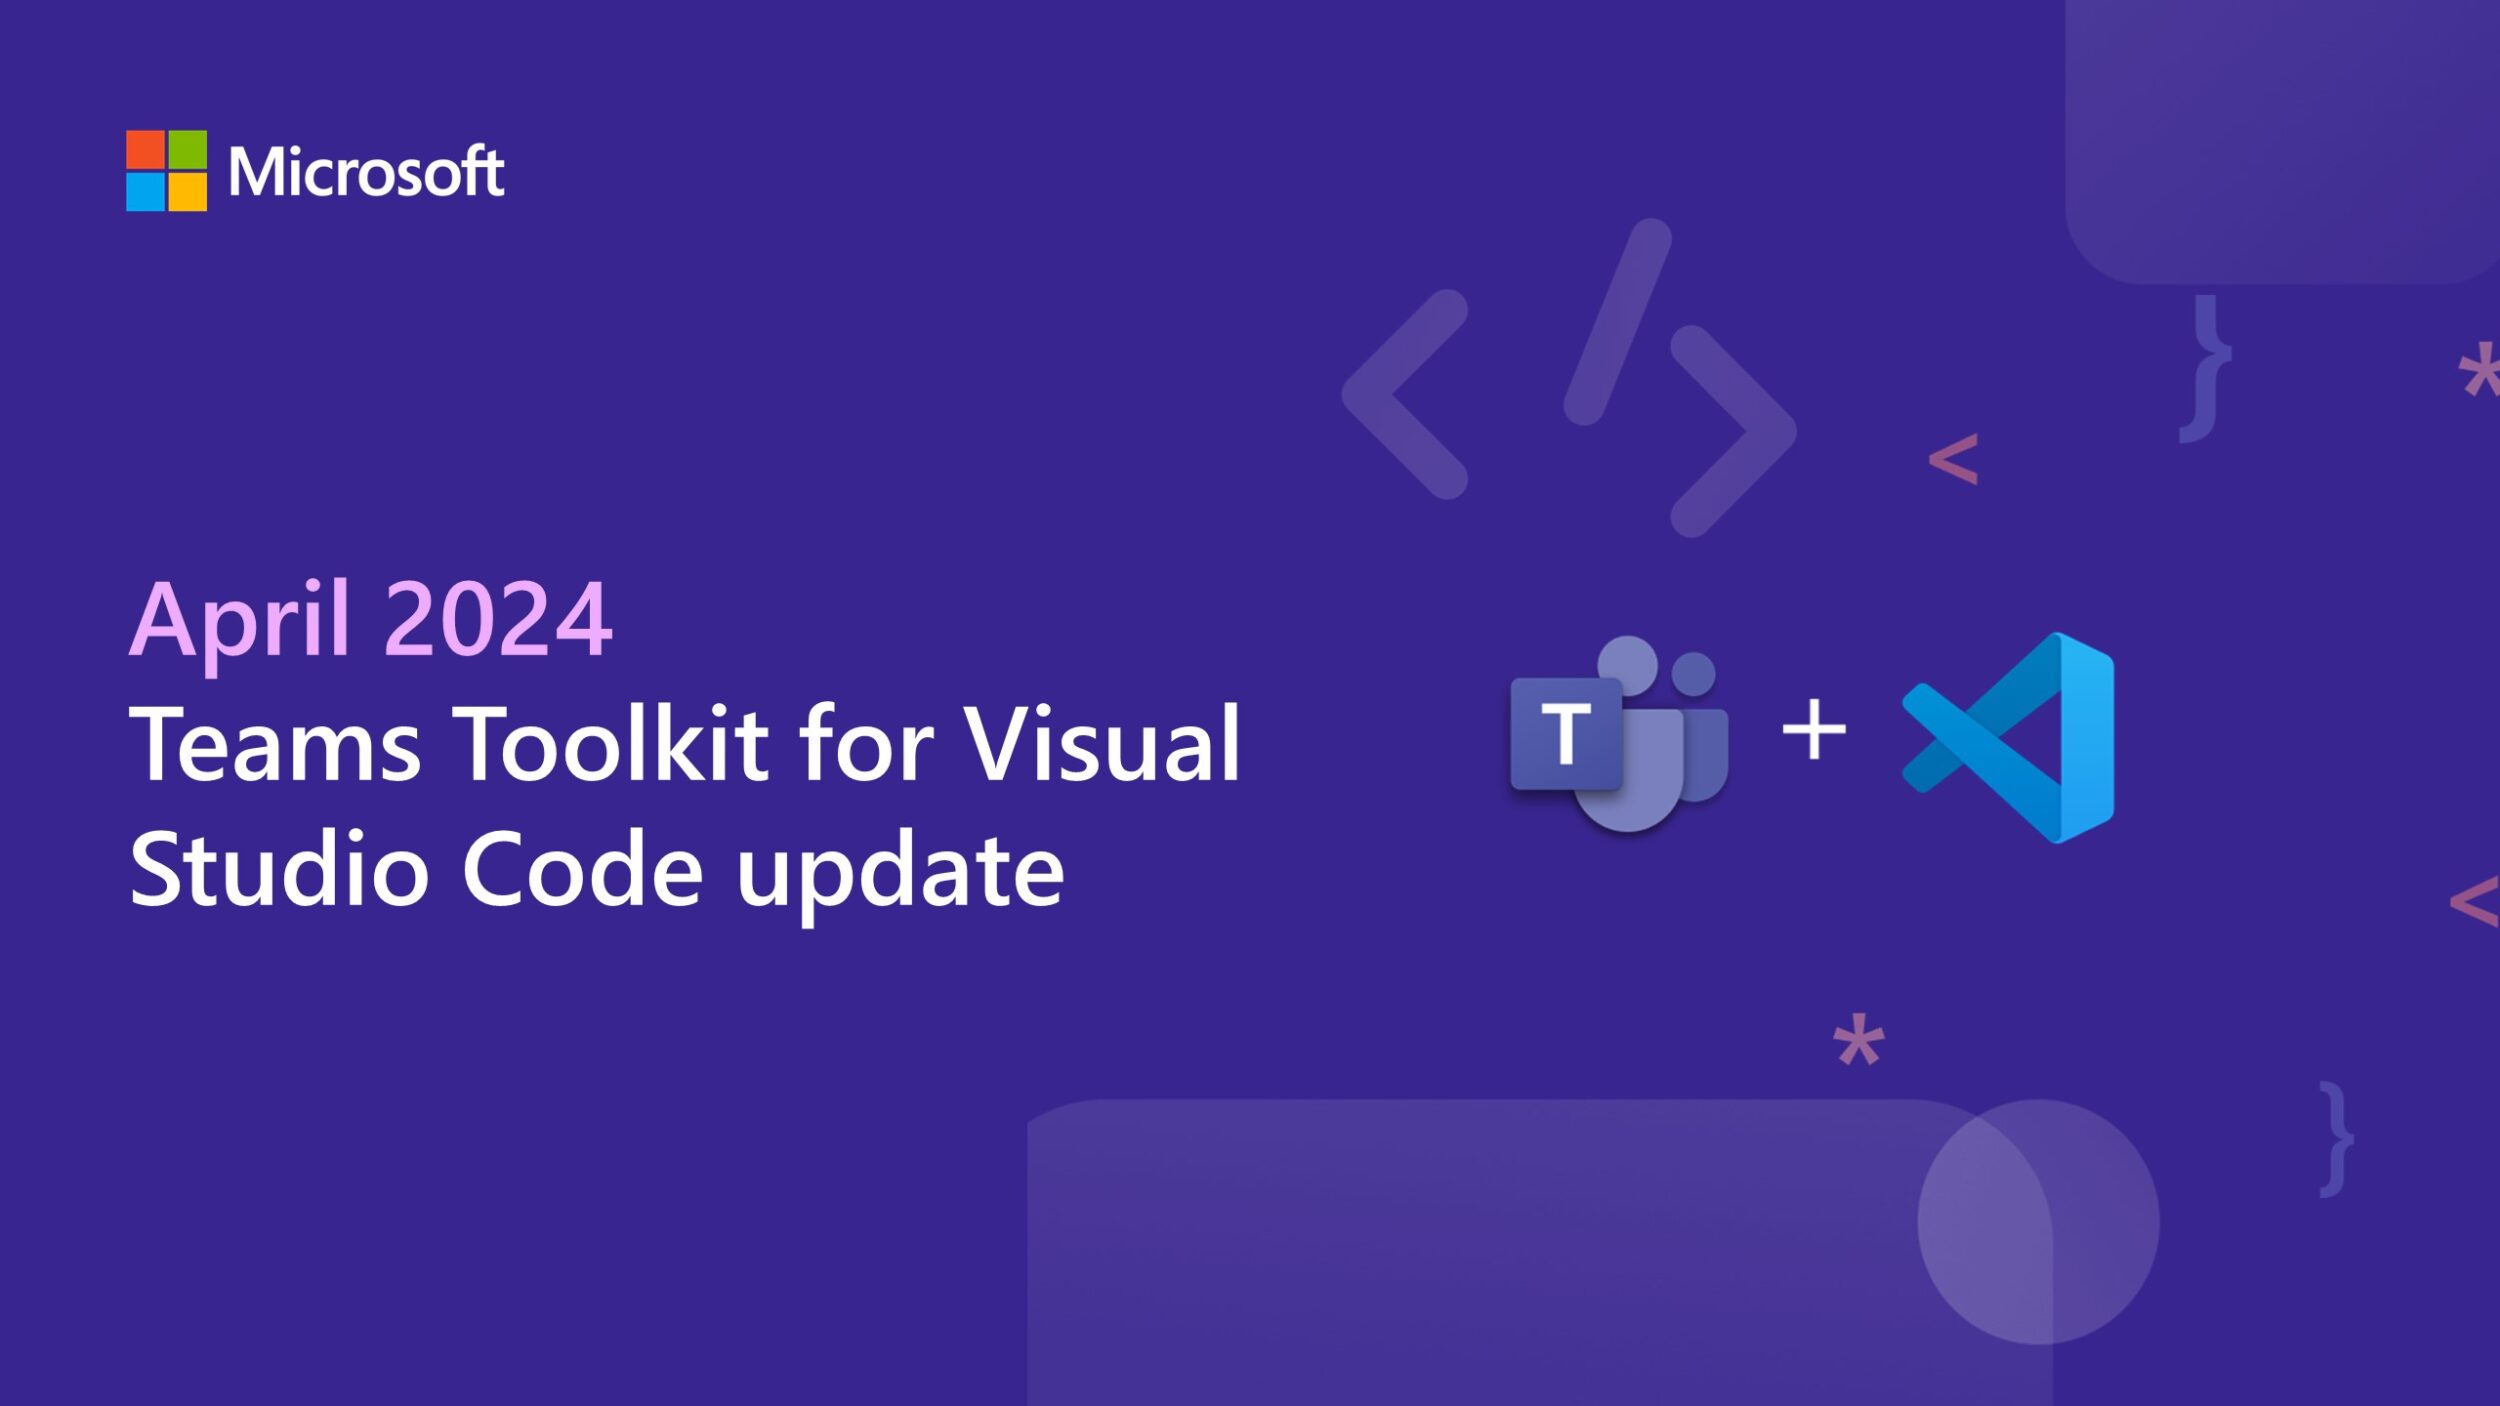 Teams Toolkit for Visual Studio Code update – April 2024